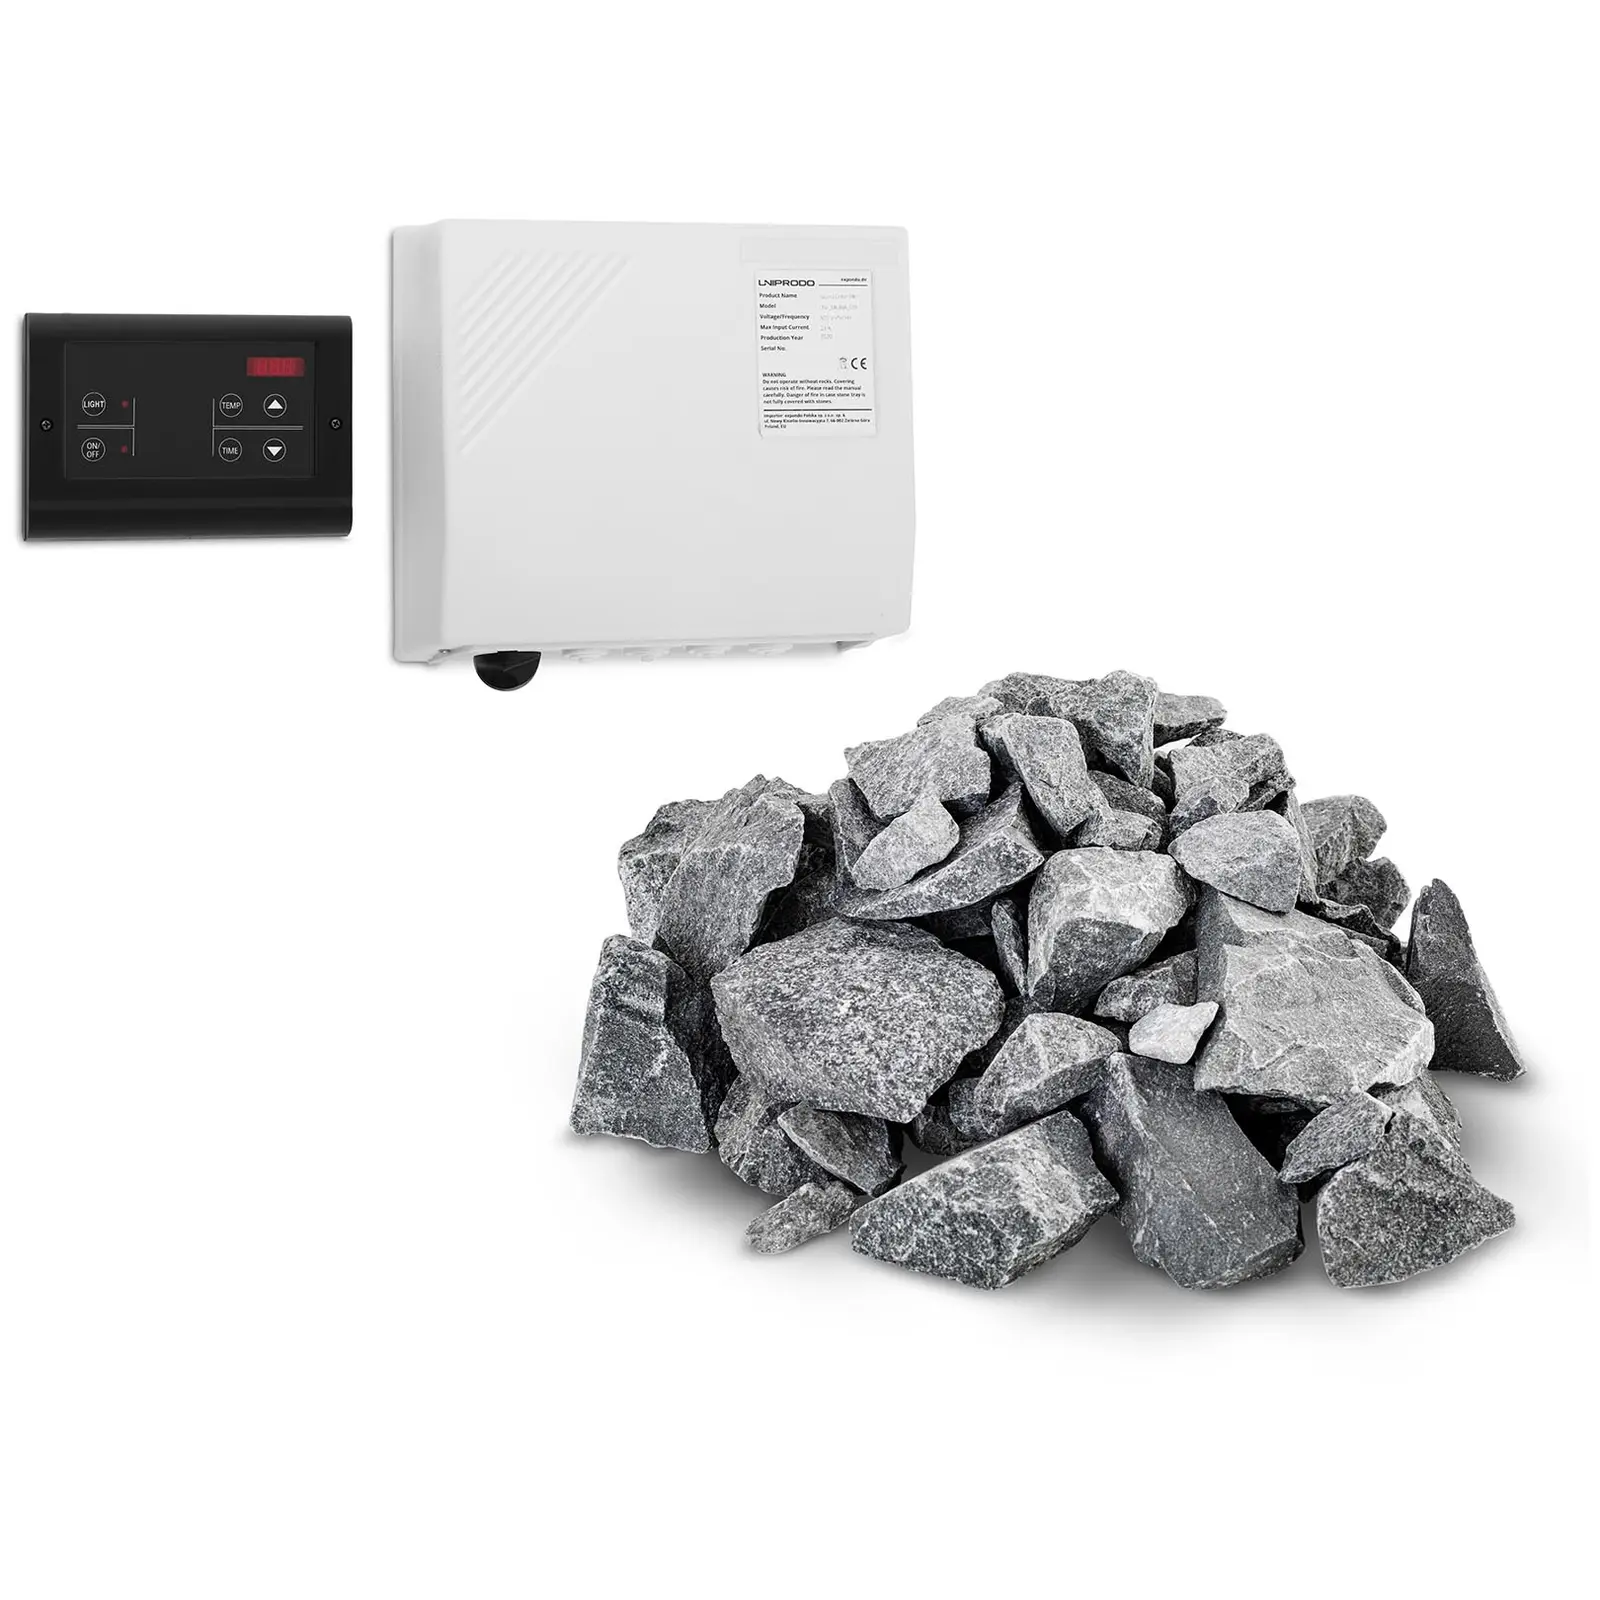 Sada řídící jednotky pro sauny se saunovými kameny - LED displej - 20 kg - pro saunová kamna Uniprodo